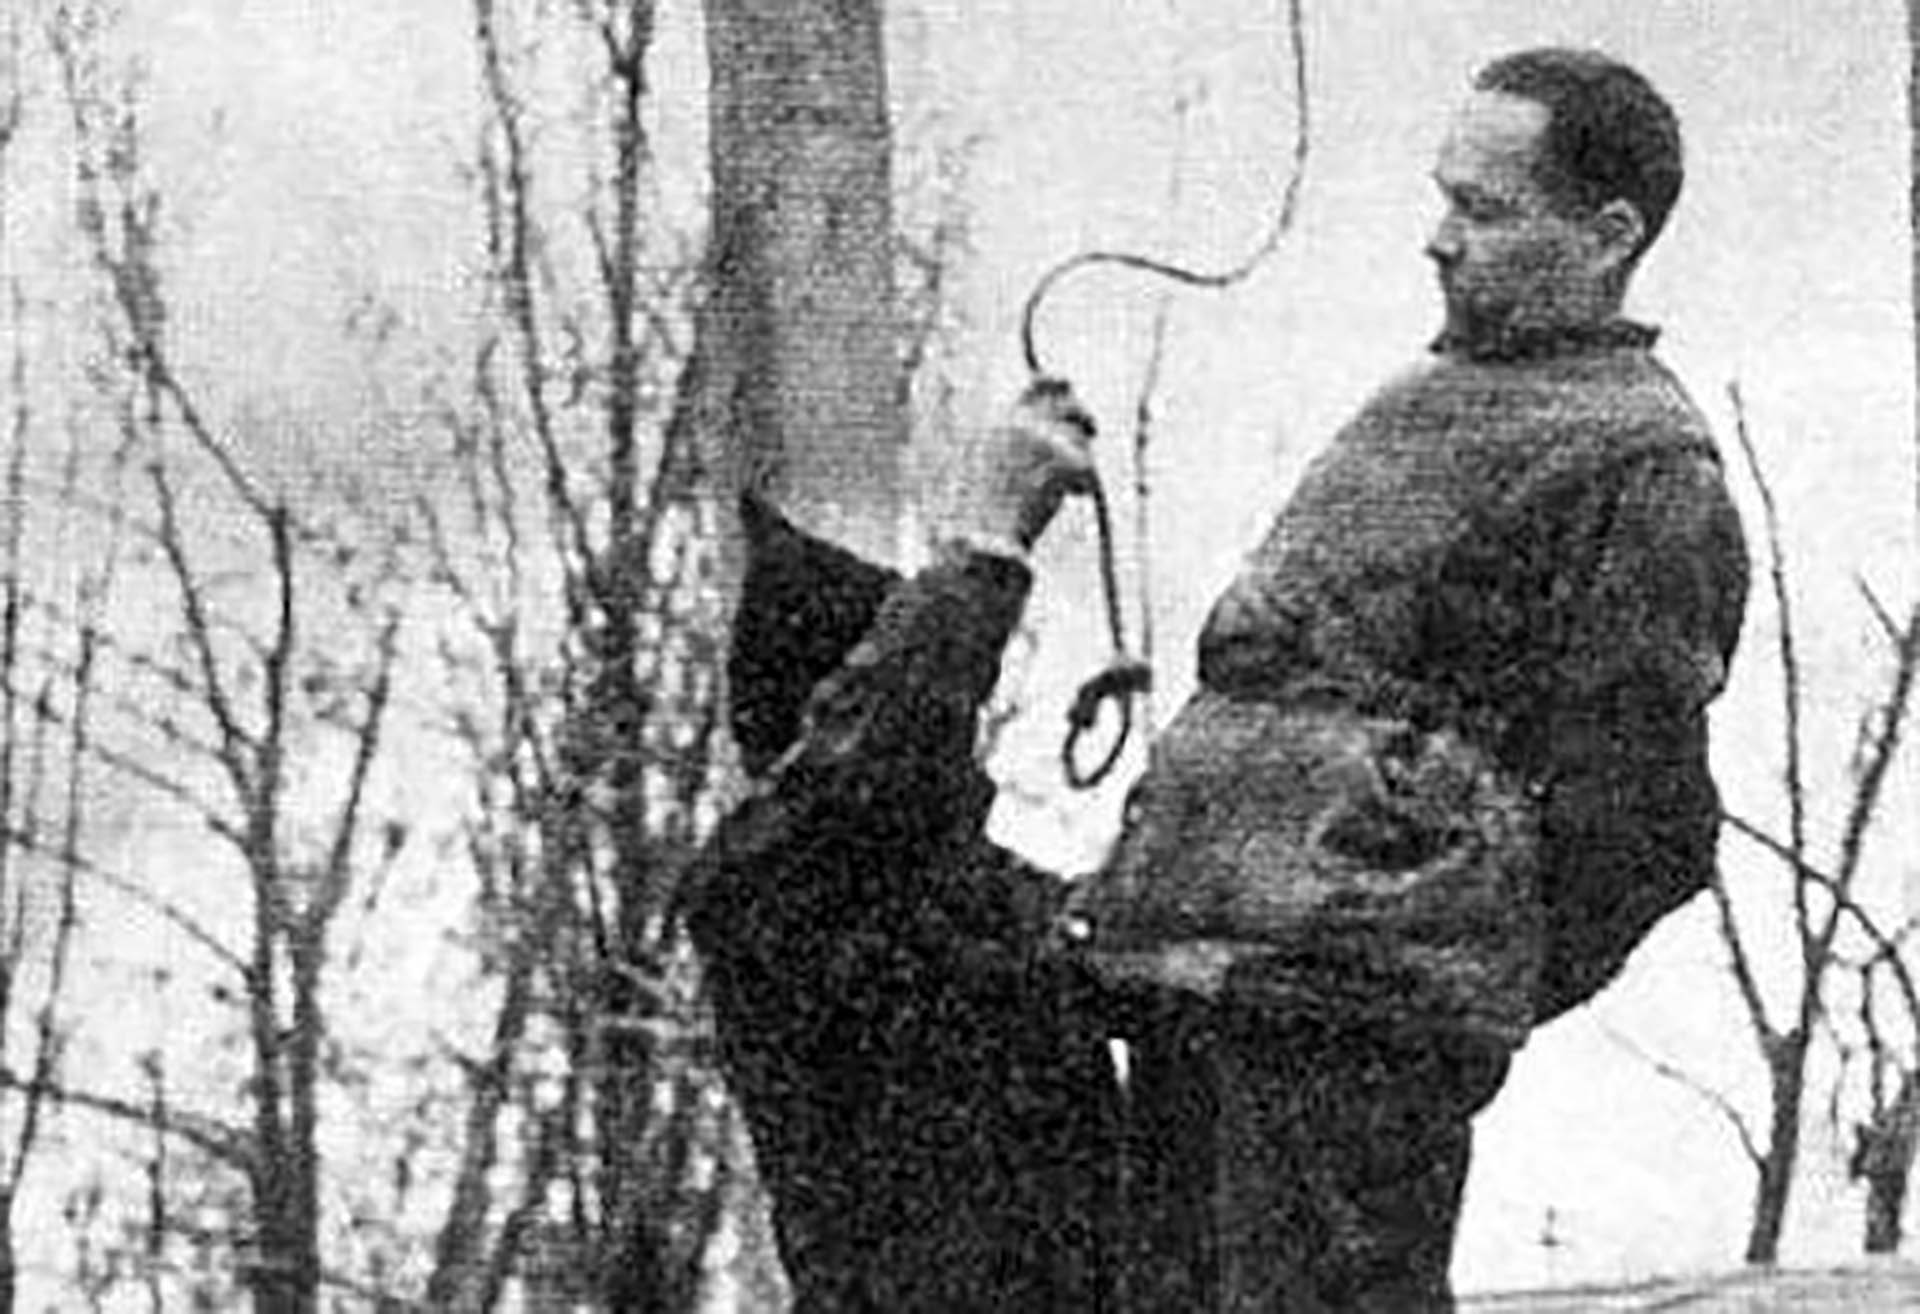 Rudolf Hoss, antes de ser ahorcado. El verdugo pone la soga alrededor del cuello. La horca había sido construida unos años antes por orden de Hoss